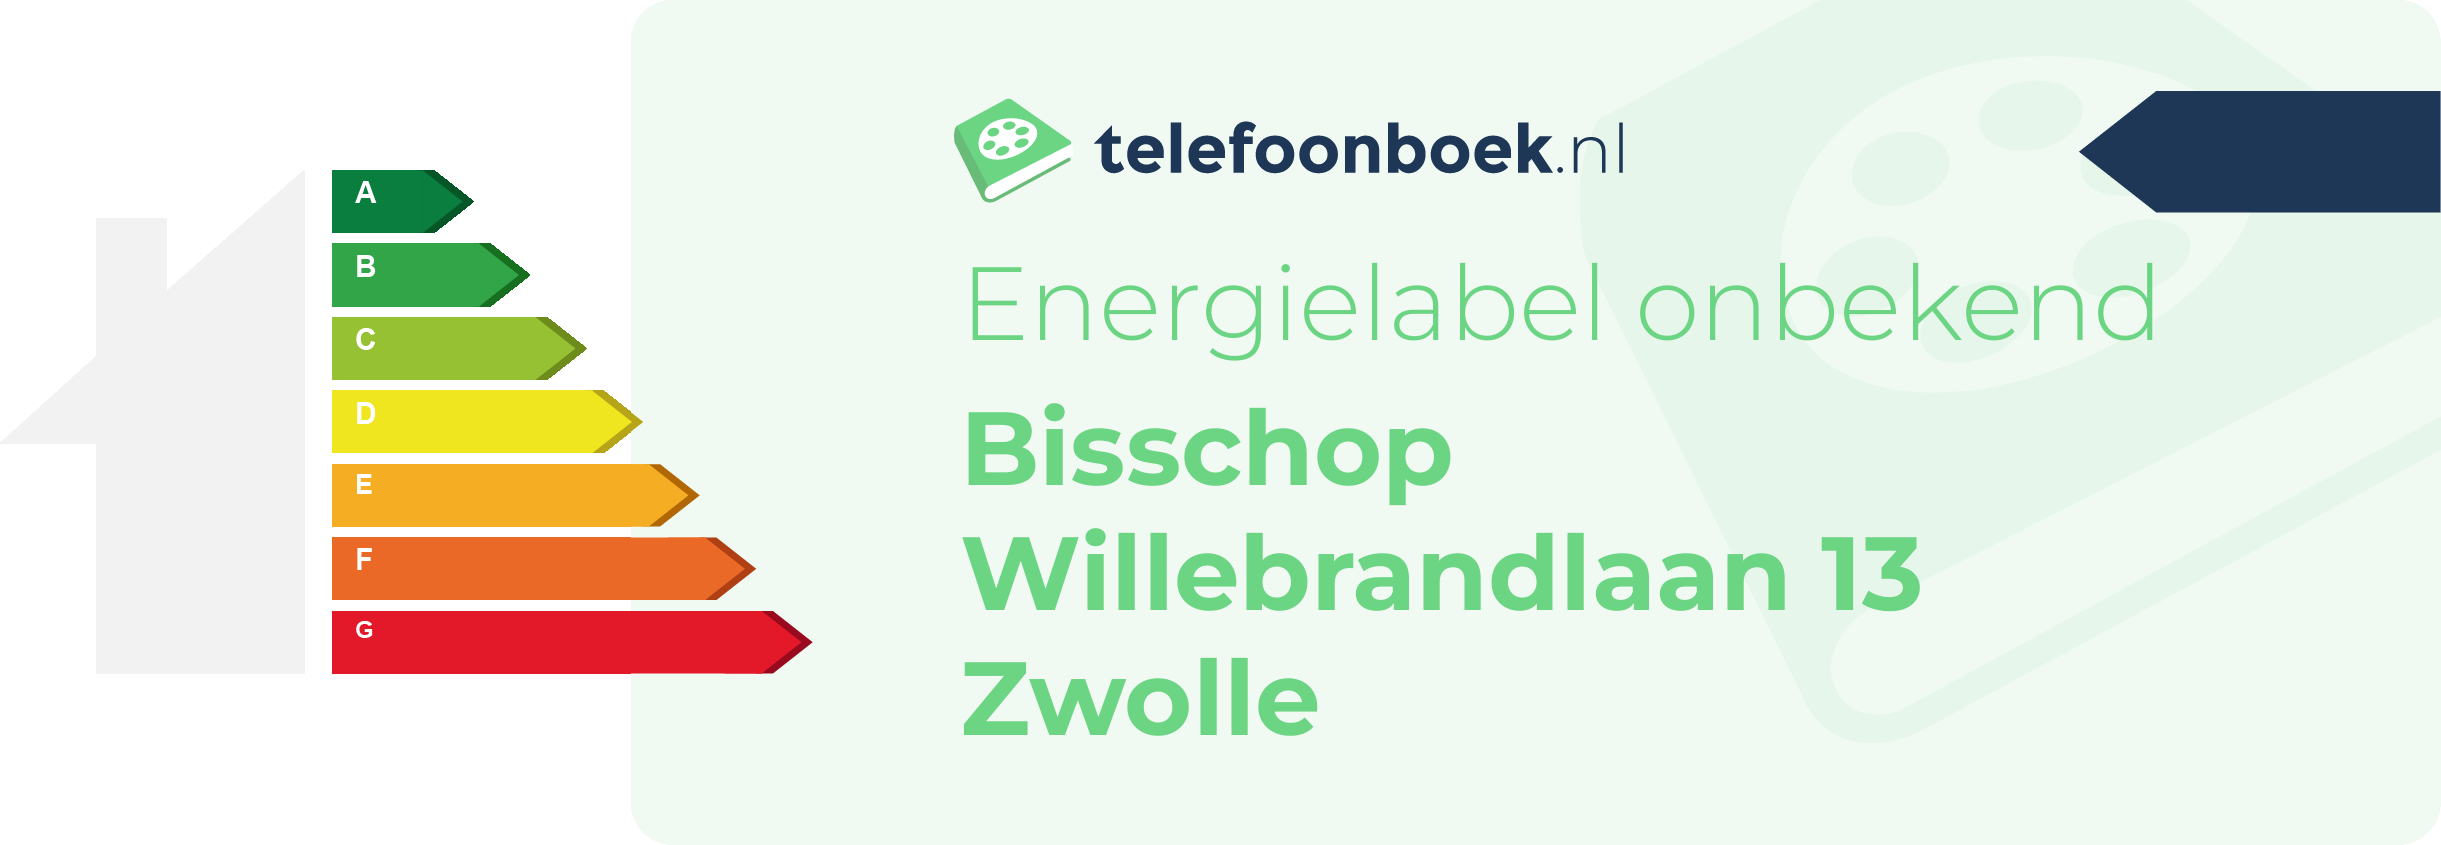 Energielabel Bisschop Willebrandlaan 13 Zwolle